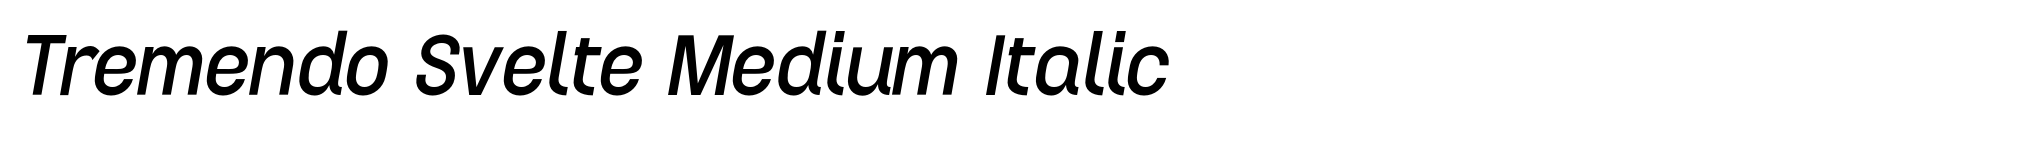 Tremendo Svelte Medium Italic image